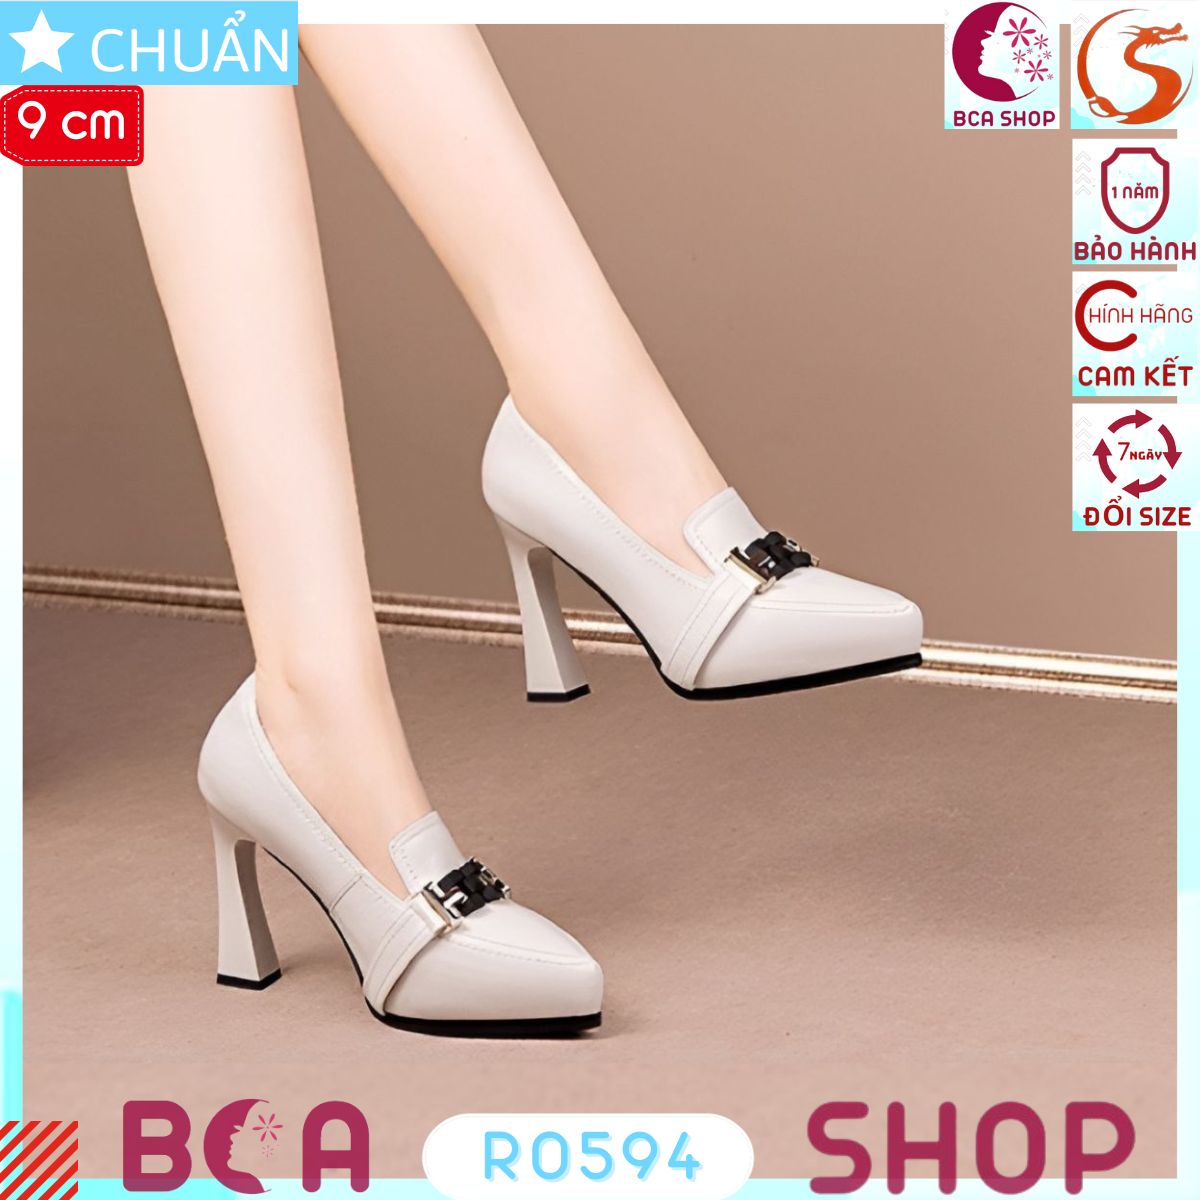 Giày đế đúp nữ cao gót 9 phân RO594 ROSATA tại BCASHOP kiểu dáng công sở tôn dáng và thời trang, thể hiện đẳng cấp